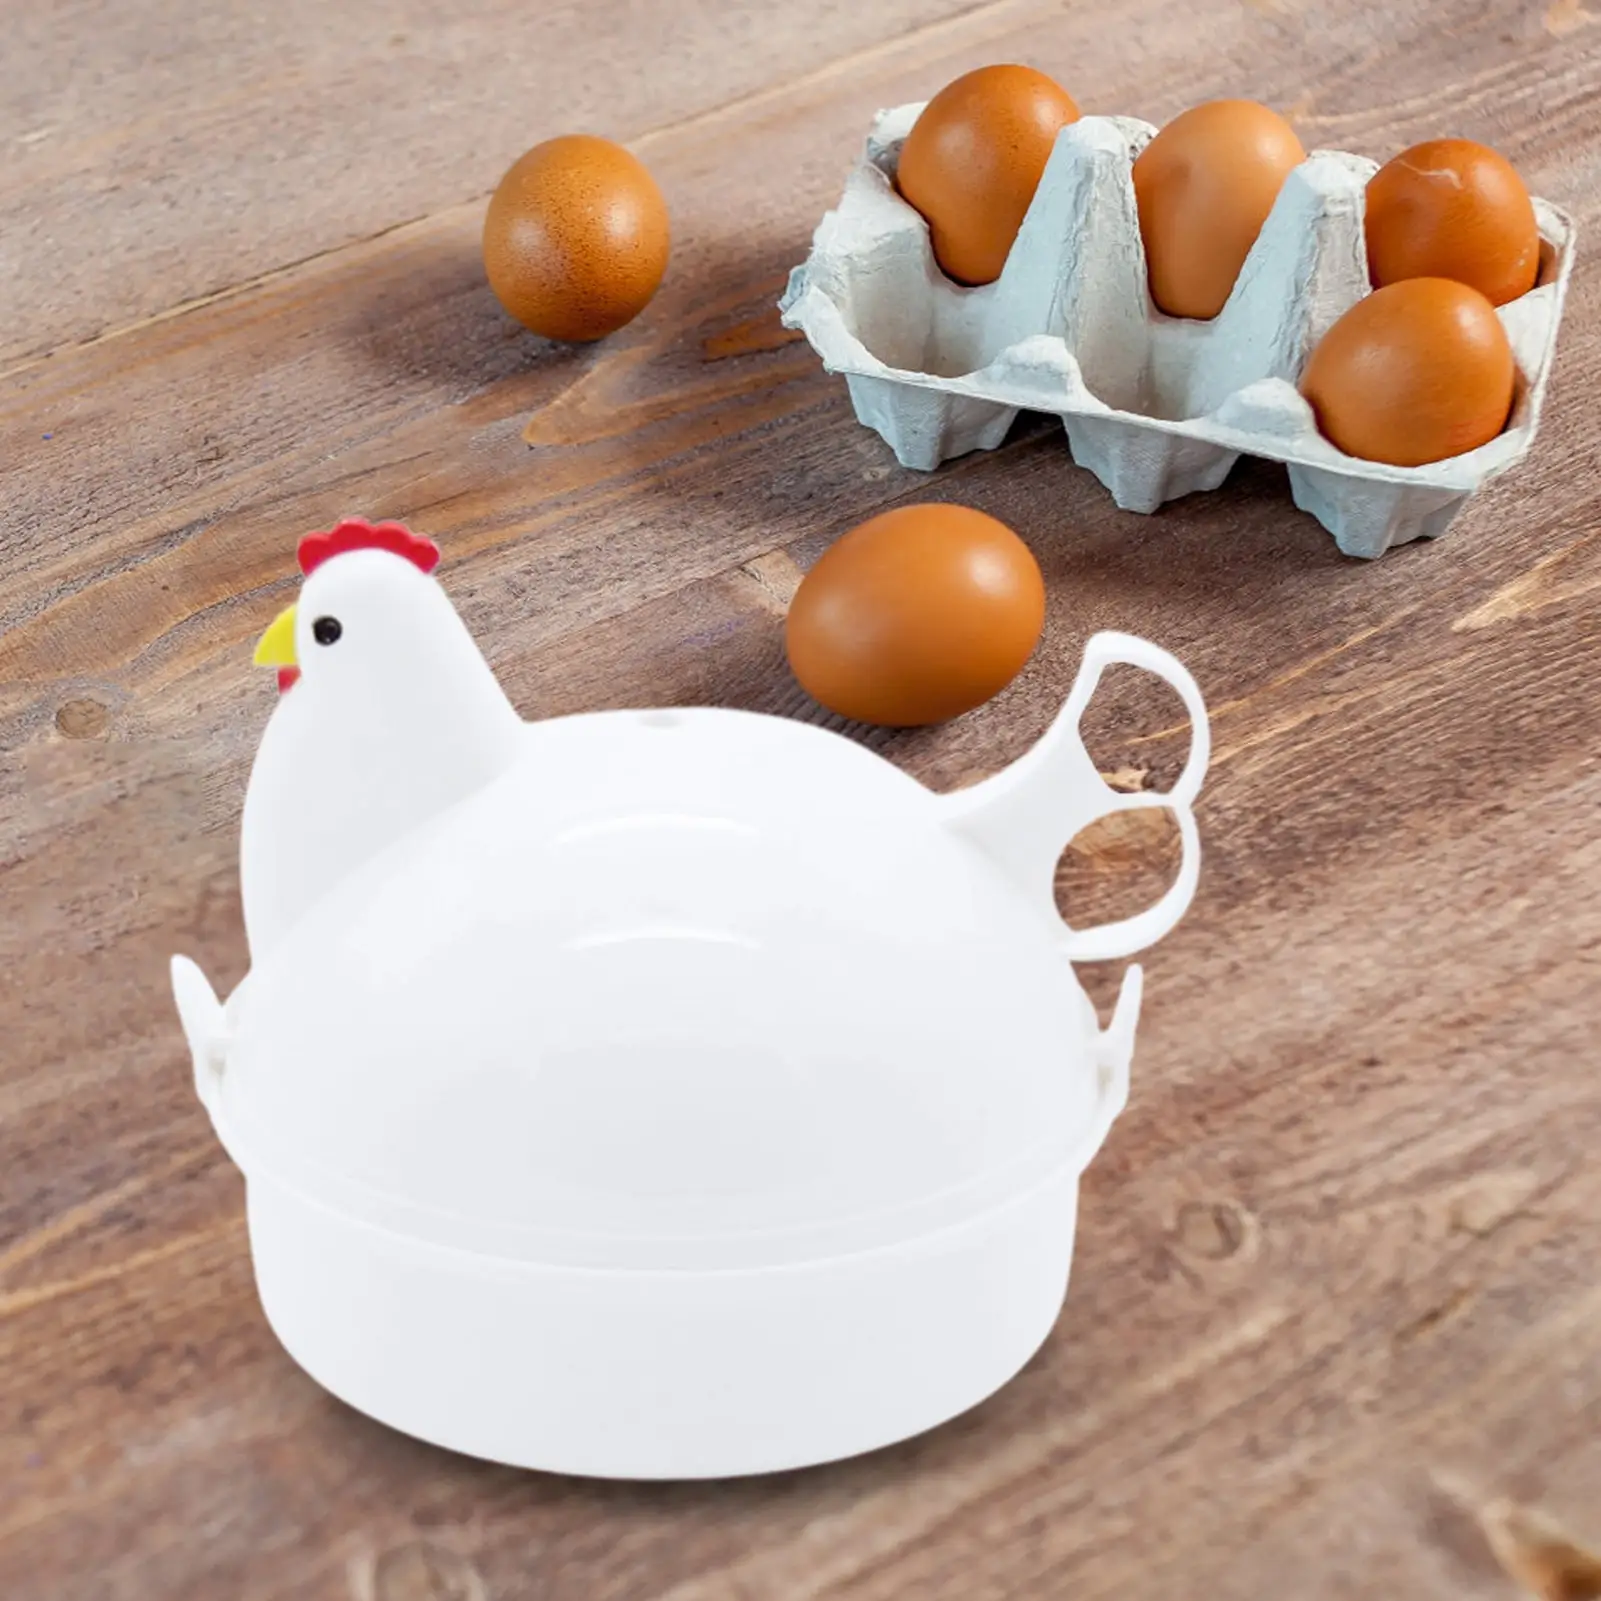 

Microwave Egg Cooker Chicken-Shaped Rapid Egg Cooker4 Eggs Electric Egg Cooker Safe Kitchen Egg Boiler Steamer Gadgets